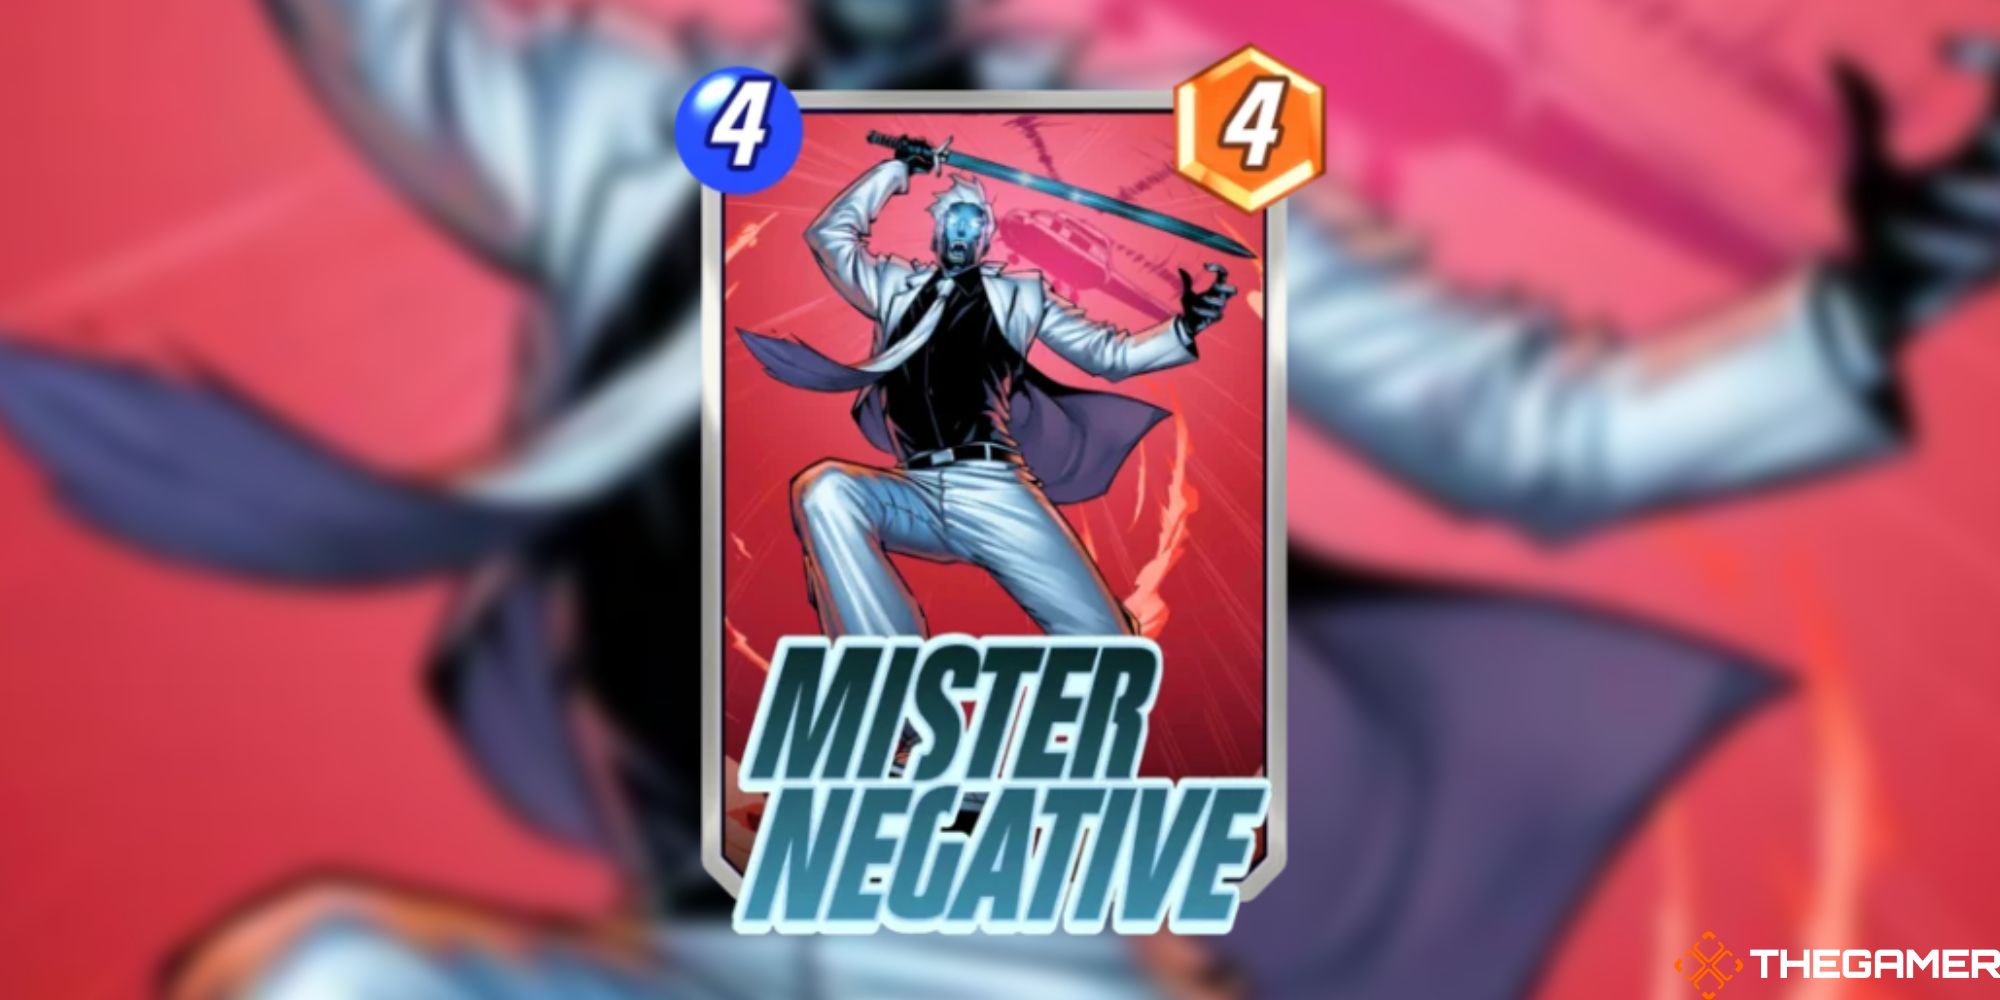 Marvel Snap - Mister Negative on a blurred background